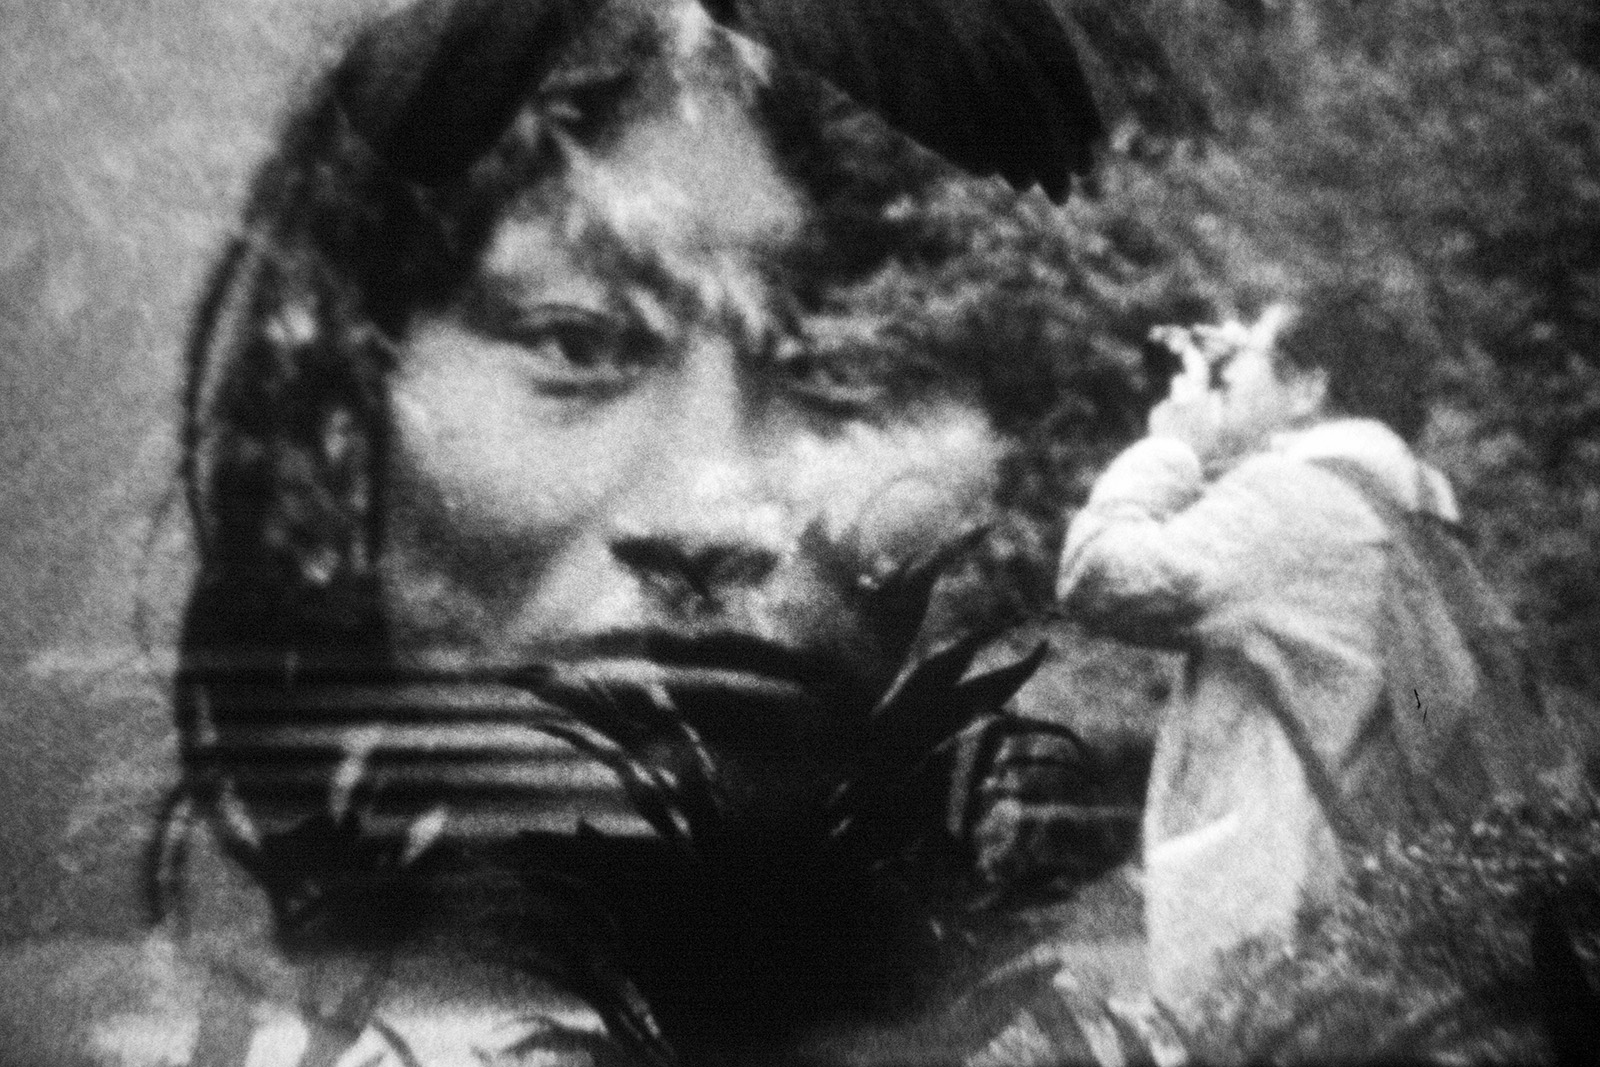 Ein Mann fotografiert einen Bildschirm, der das Gesicht einer indigenen Person zeigt